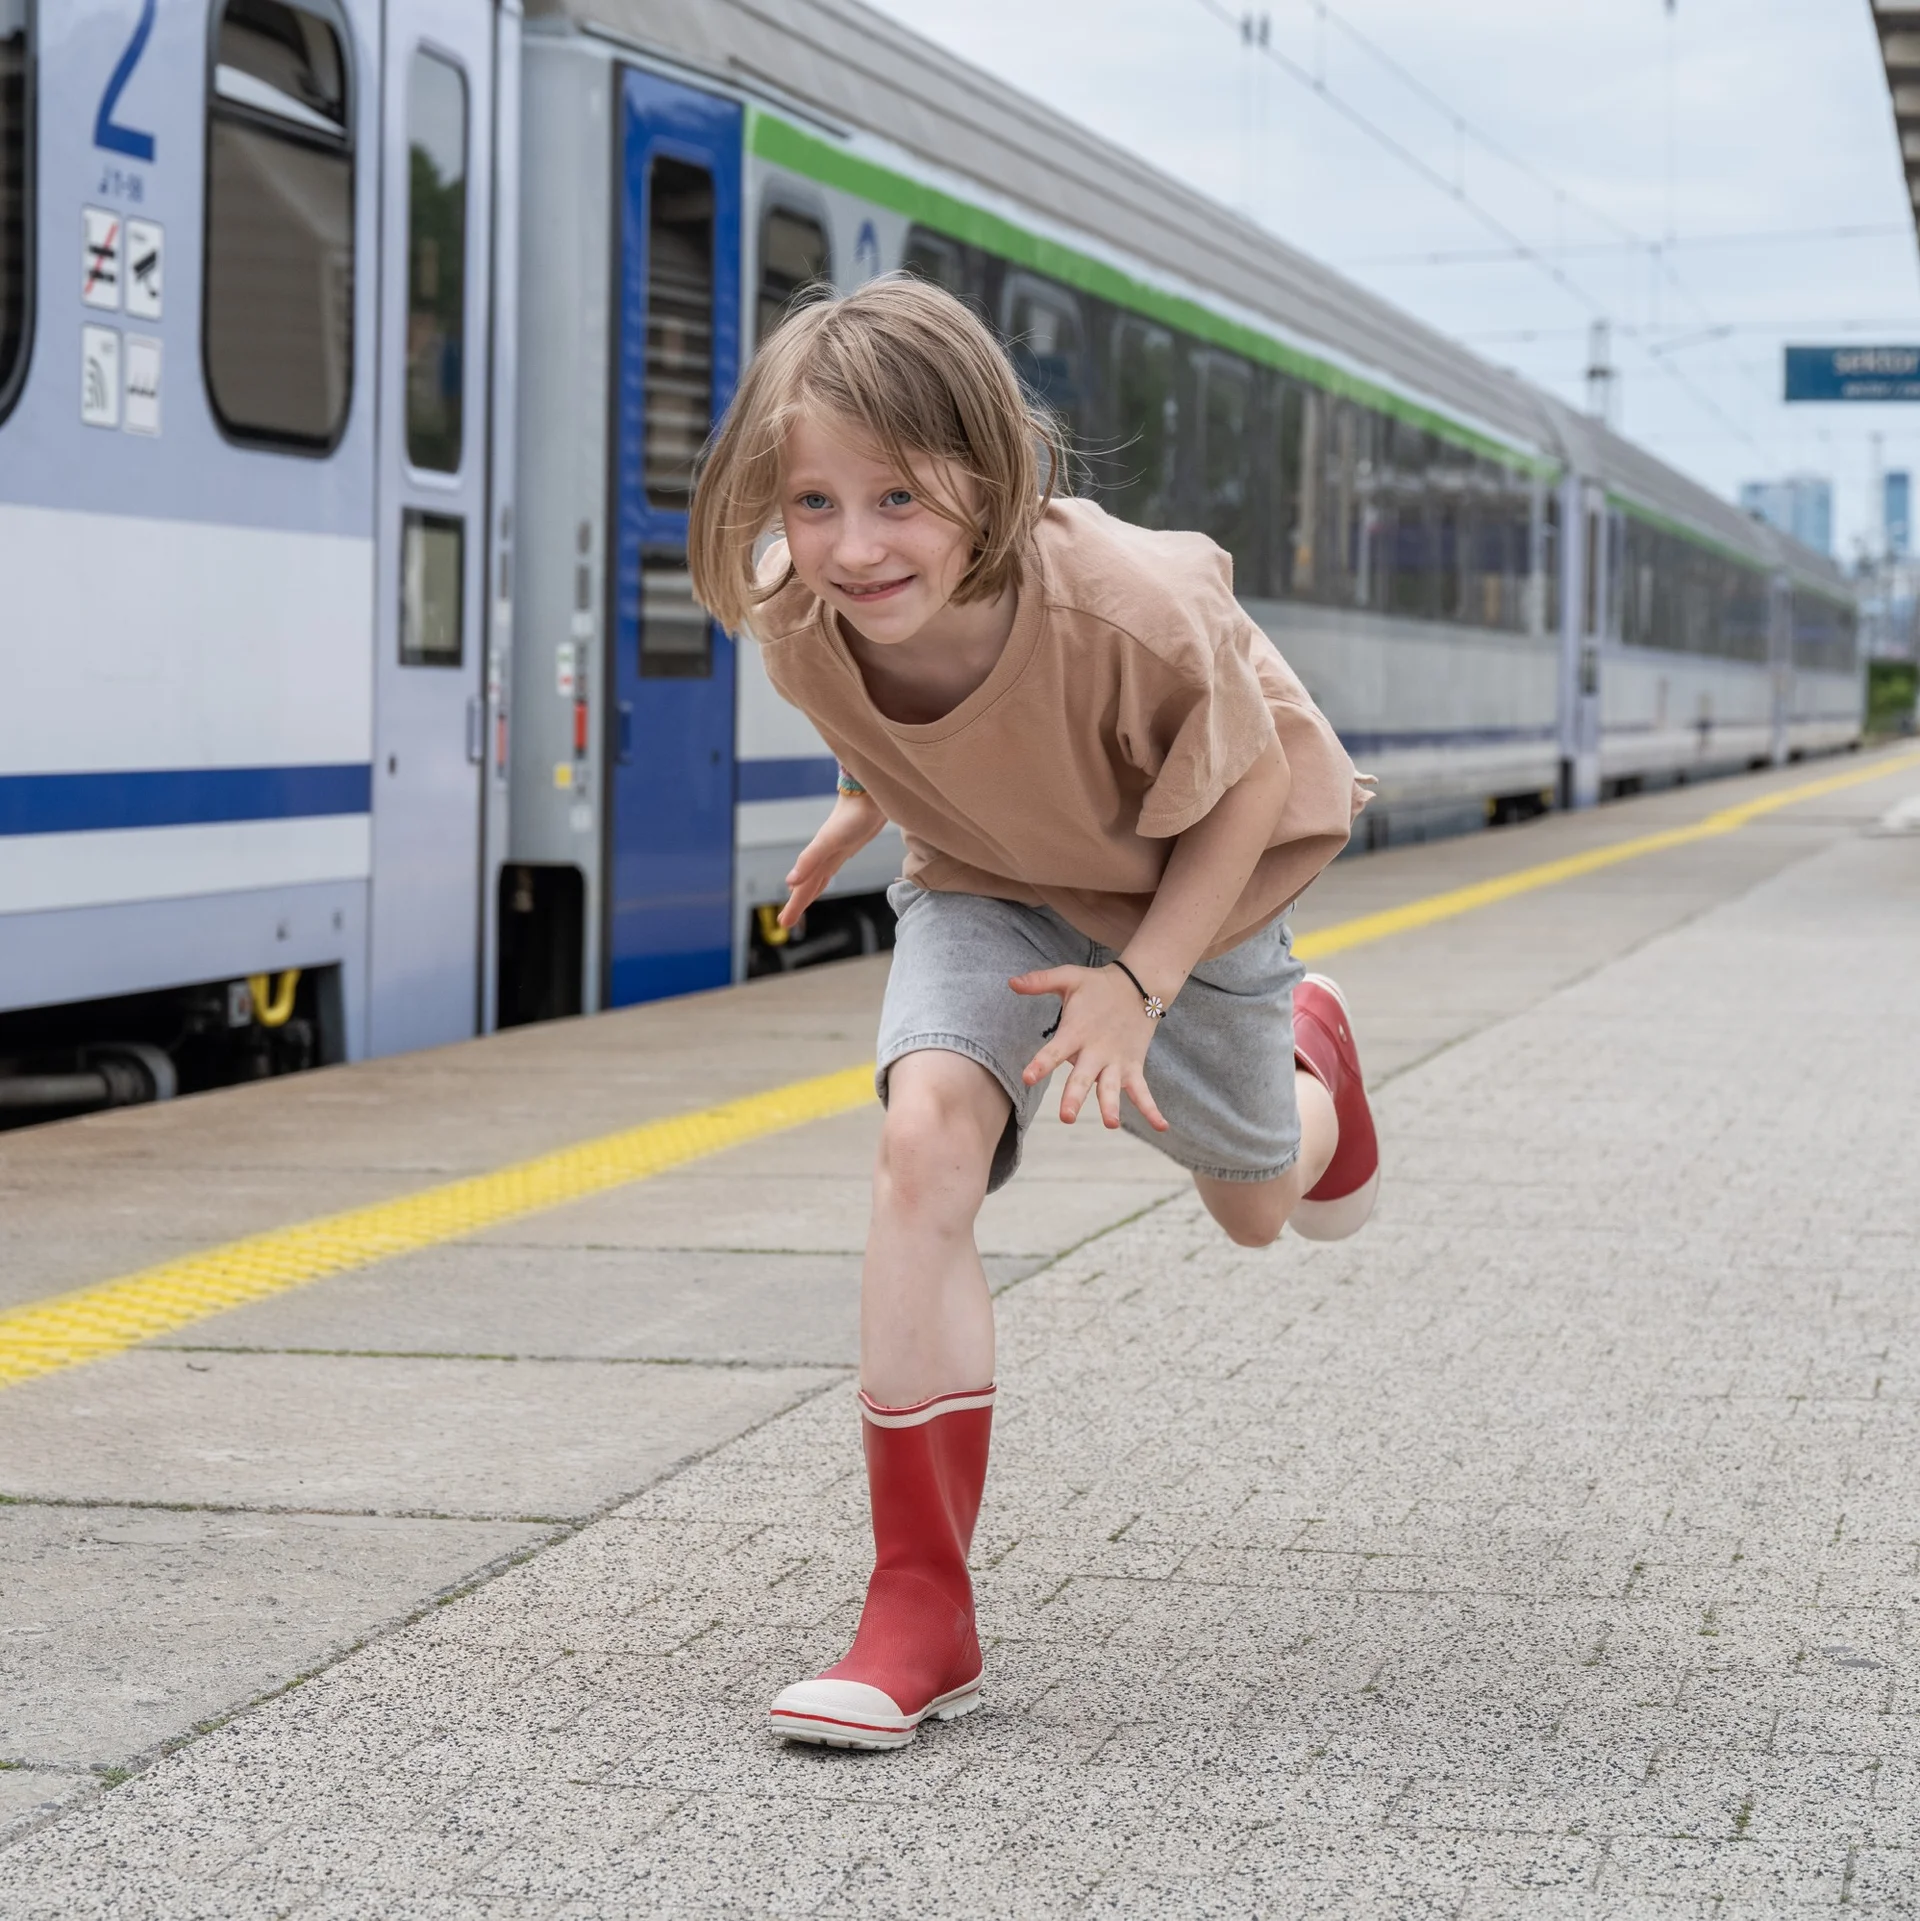 Dziewczynka w czerwonych kaloszach biegnie po peronie.